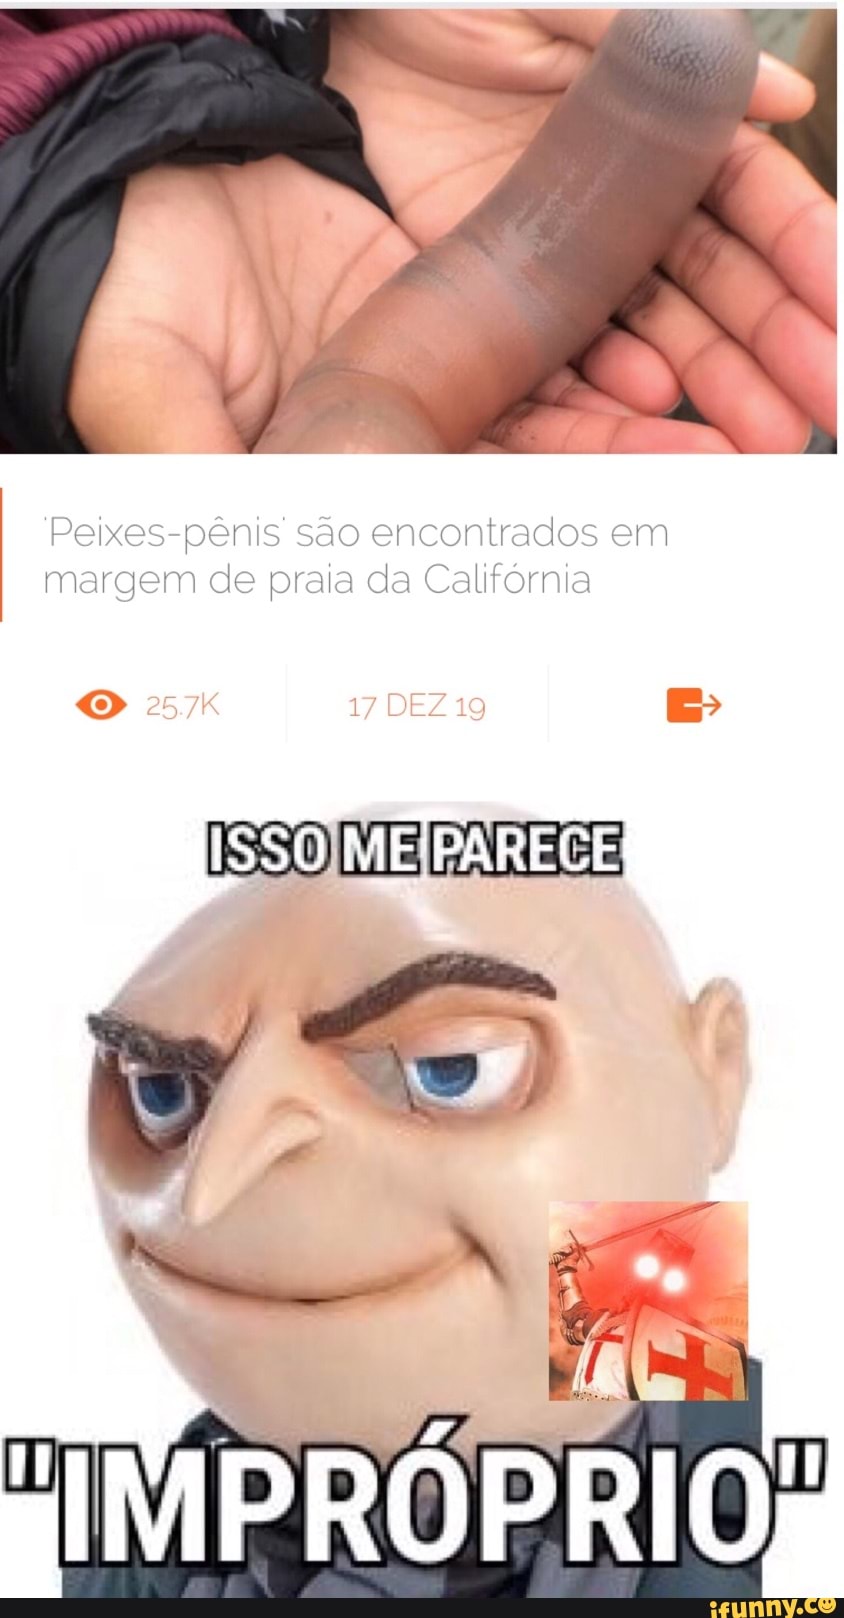 Memes de imagem 1PmdD7sQ8 por Rule34XYZ_2021: 7 comentários - iFunny Brazil